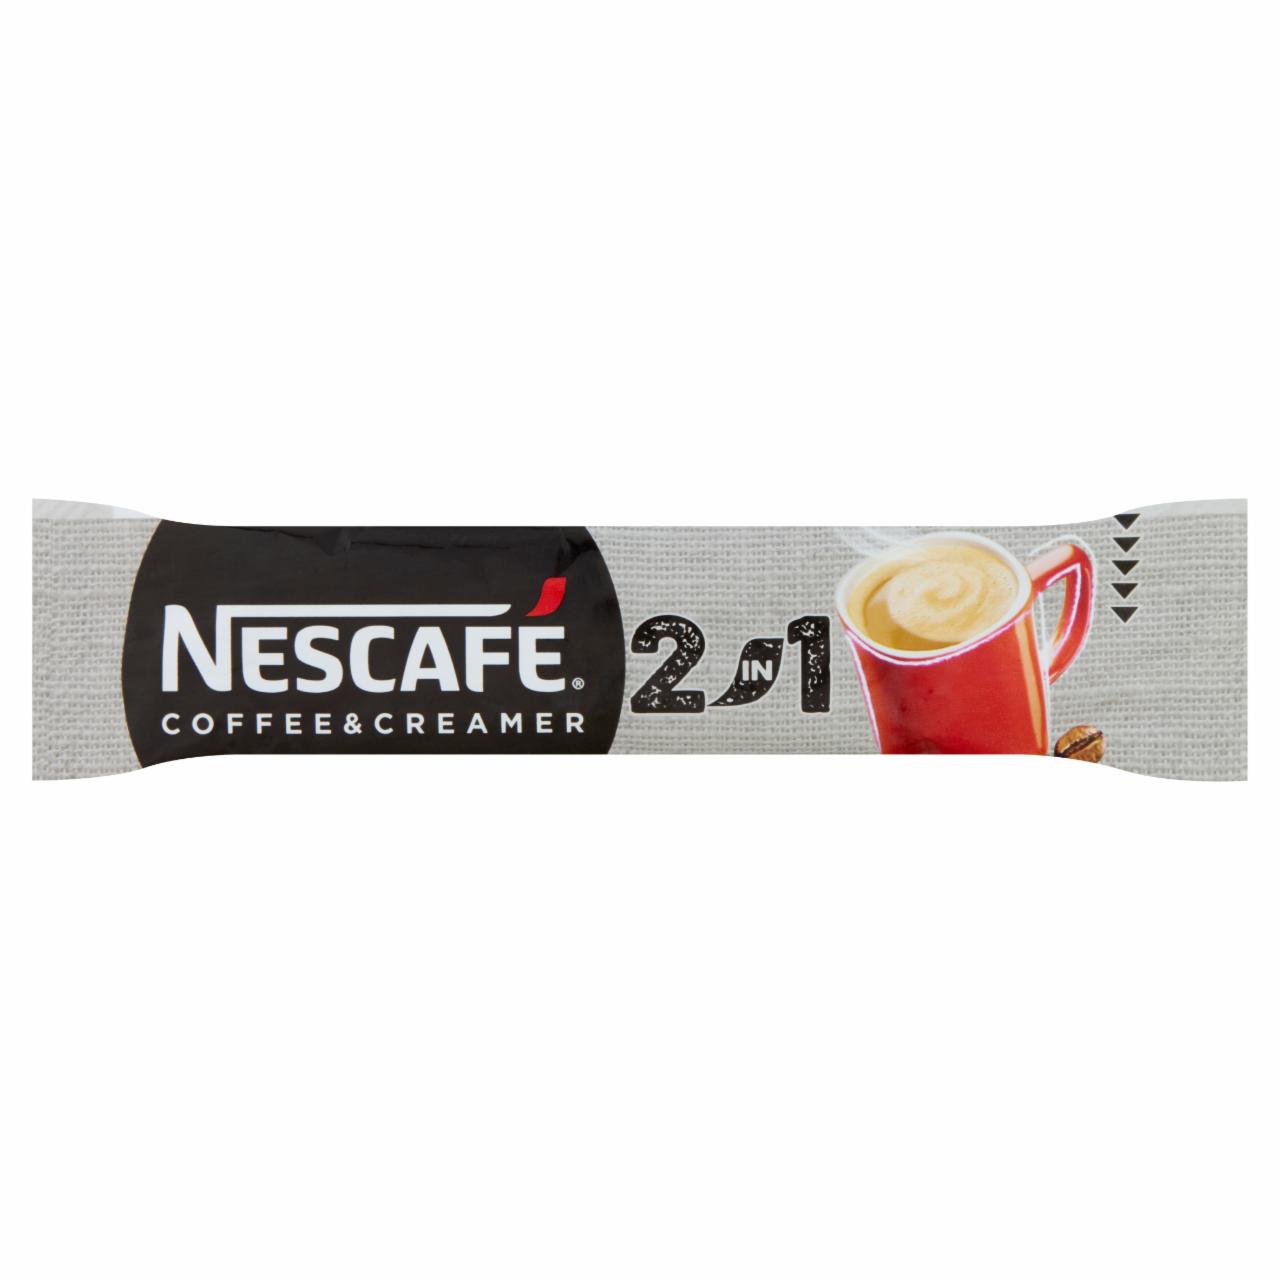 Képek - Nescafé 2in1 Coffee & Creamer azonnal oldódó kávéspecialitás 8 g